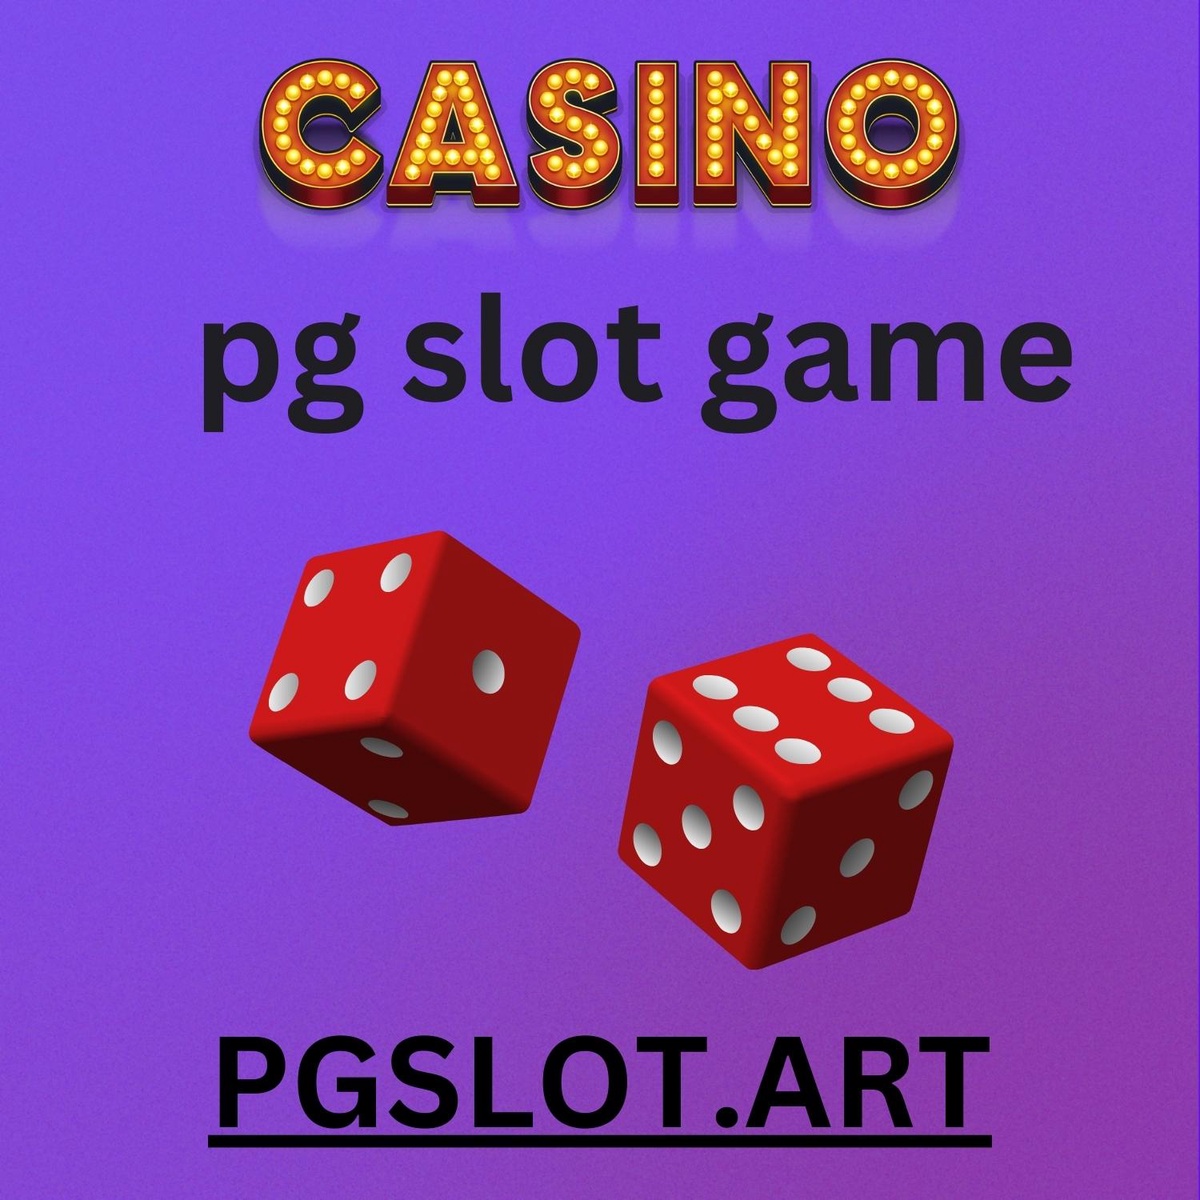 PG Slot Game เป็นเกมสล็อตที่น่าสนใจอย่างไรและทำไมมันกลายเป็นที่นิยมในวงการการพนันออนไลน์